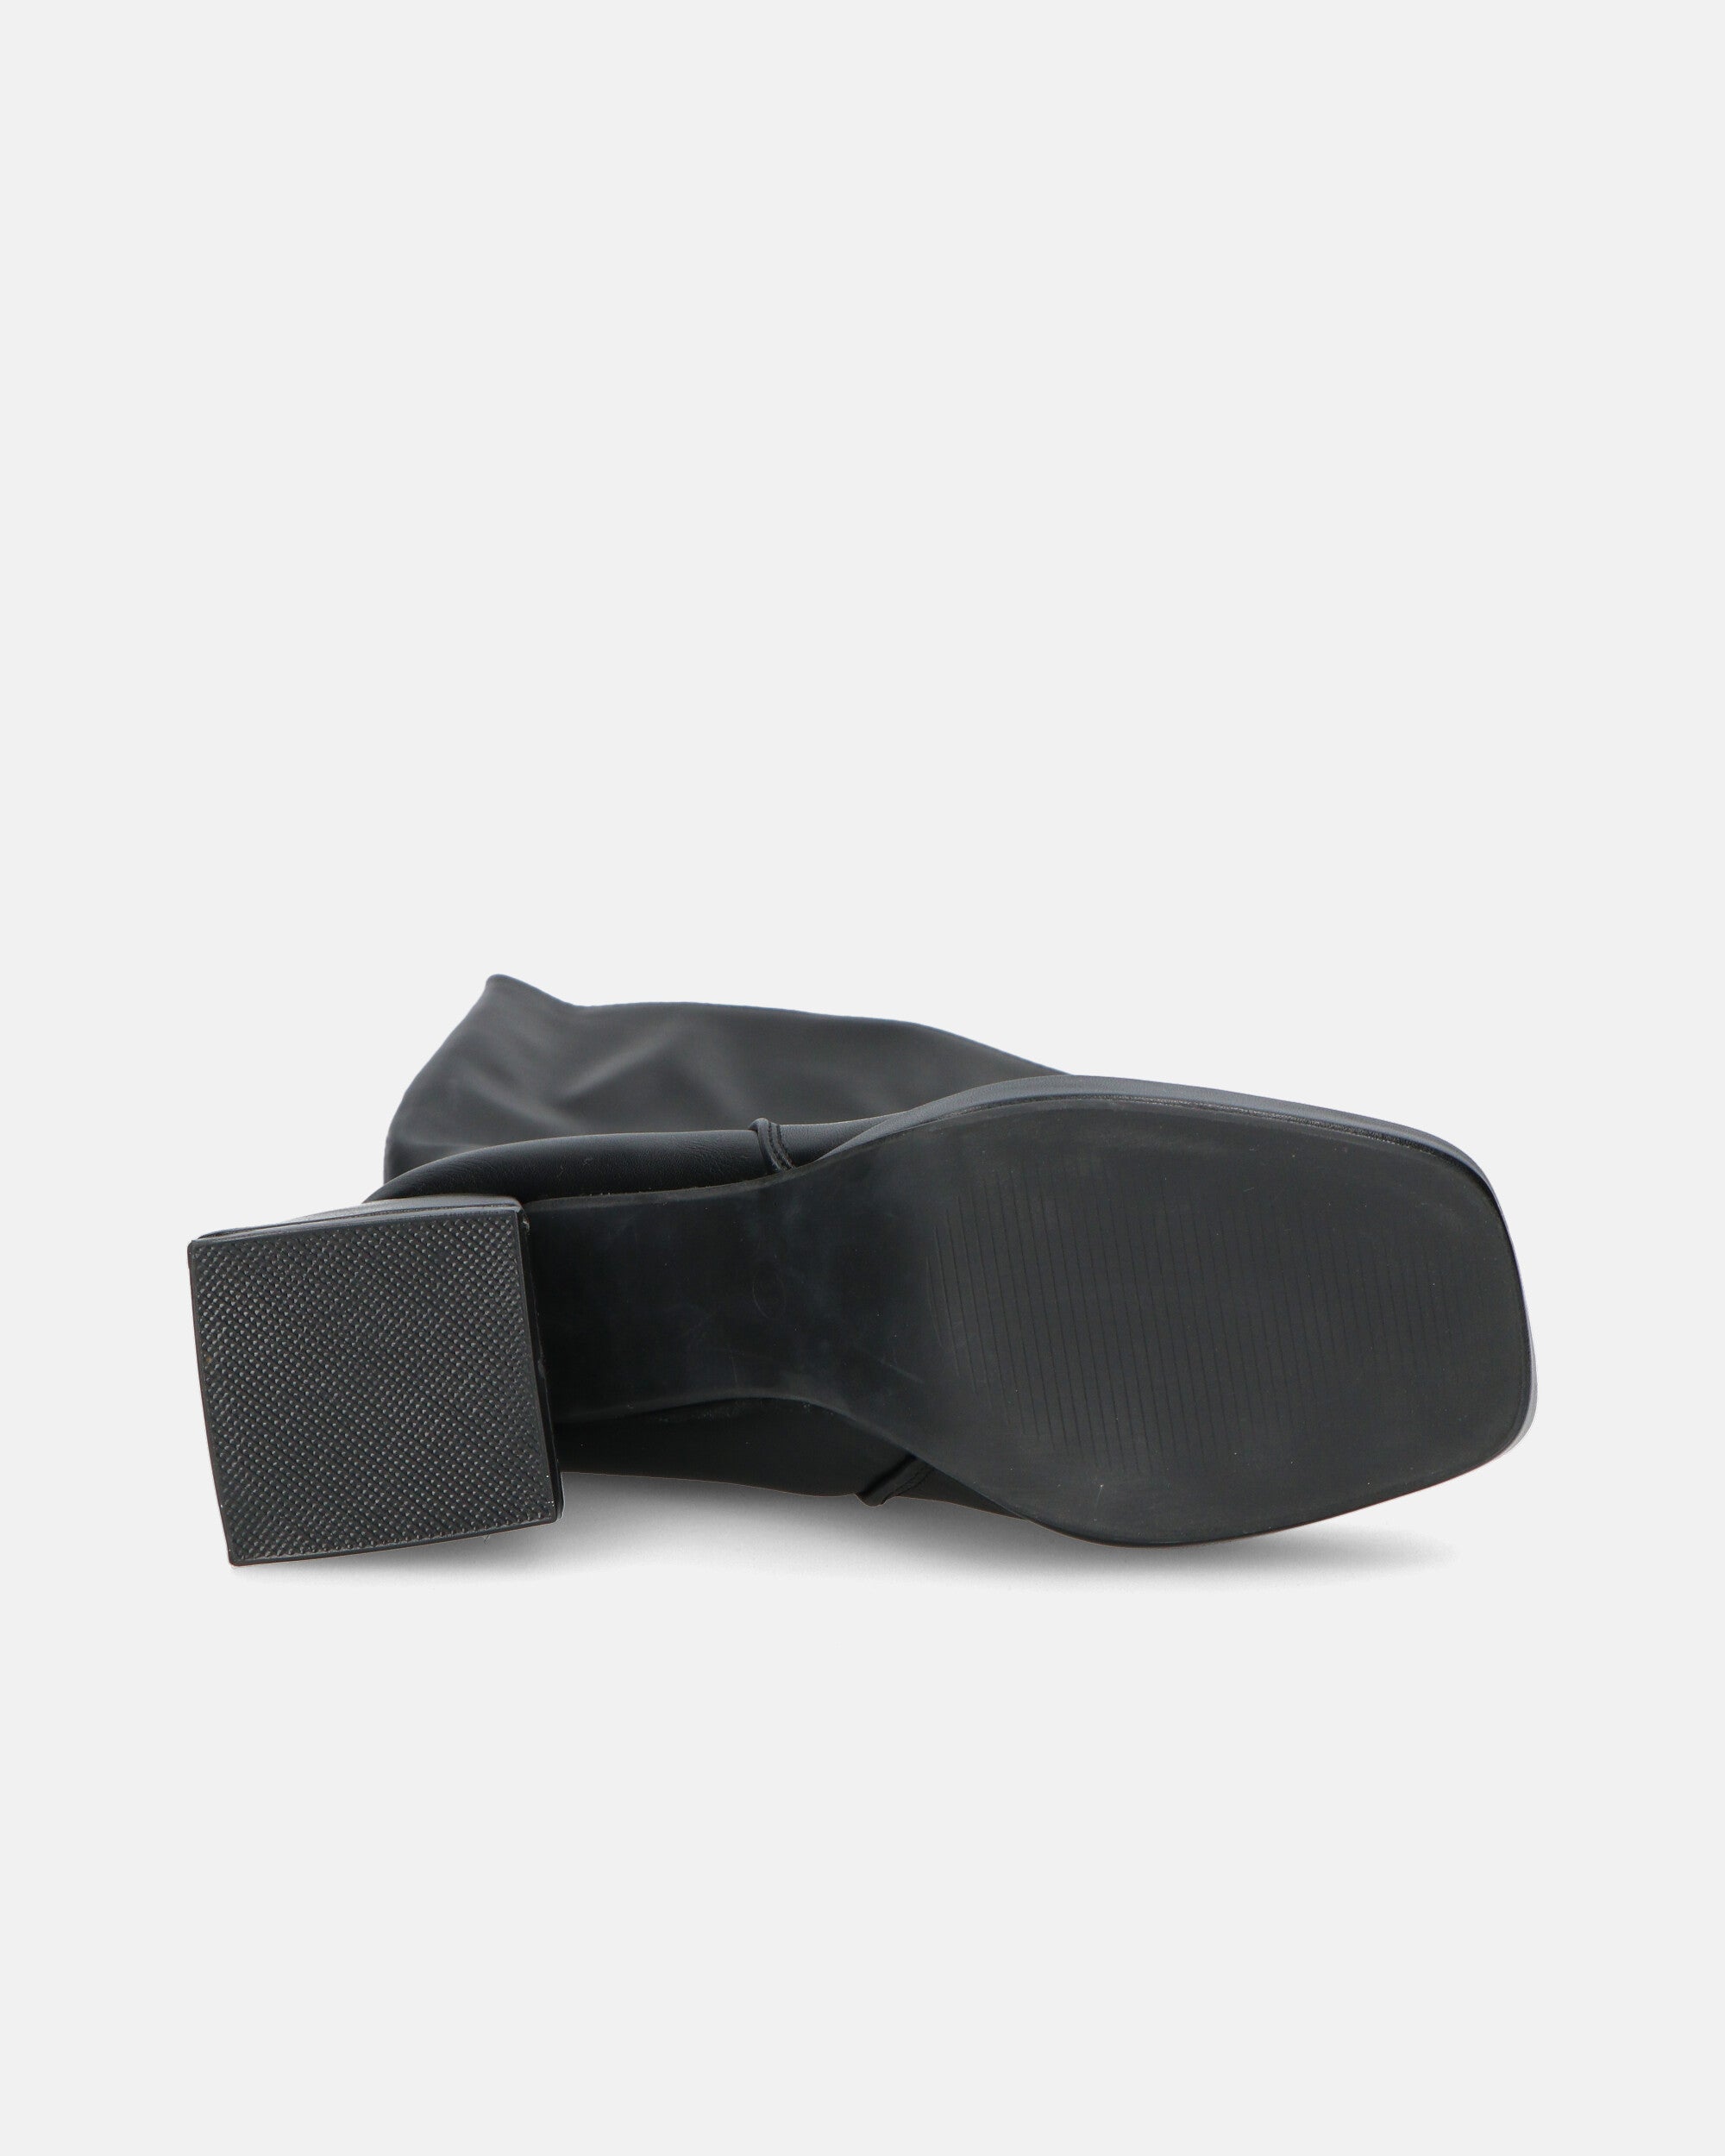 KATALIN - botas altas negras con tacón cuadrado y cremallera lateral